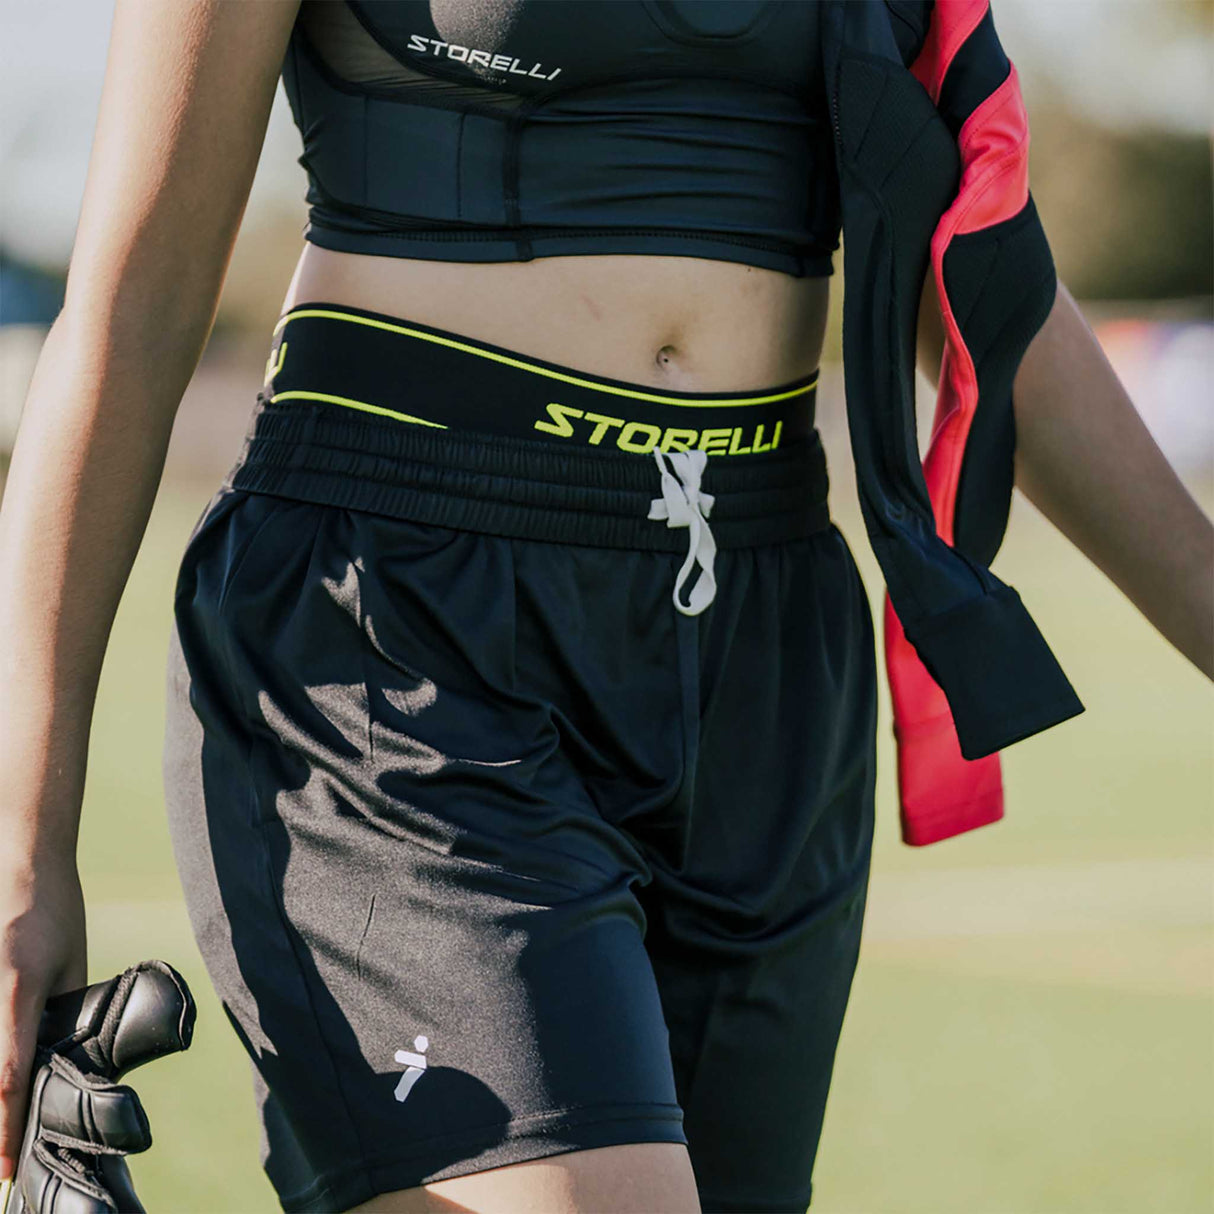 Storelli BodyShield Impact Sliders cuissards de protection pour joueuses de soccer - live 3